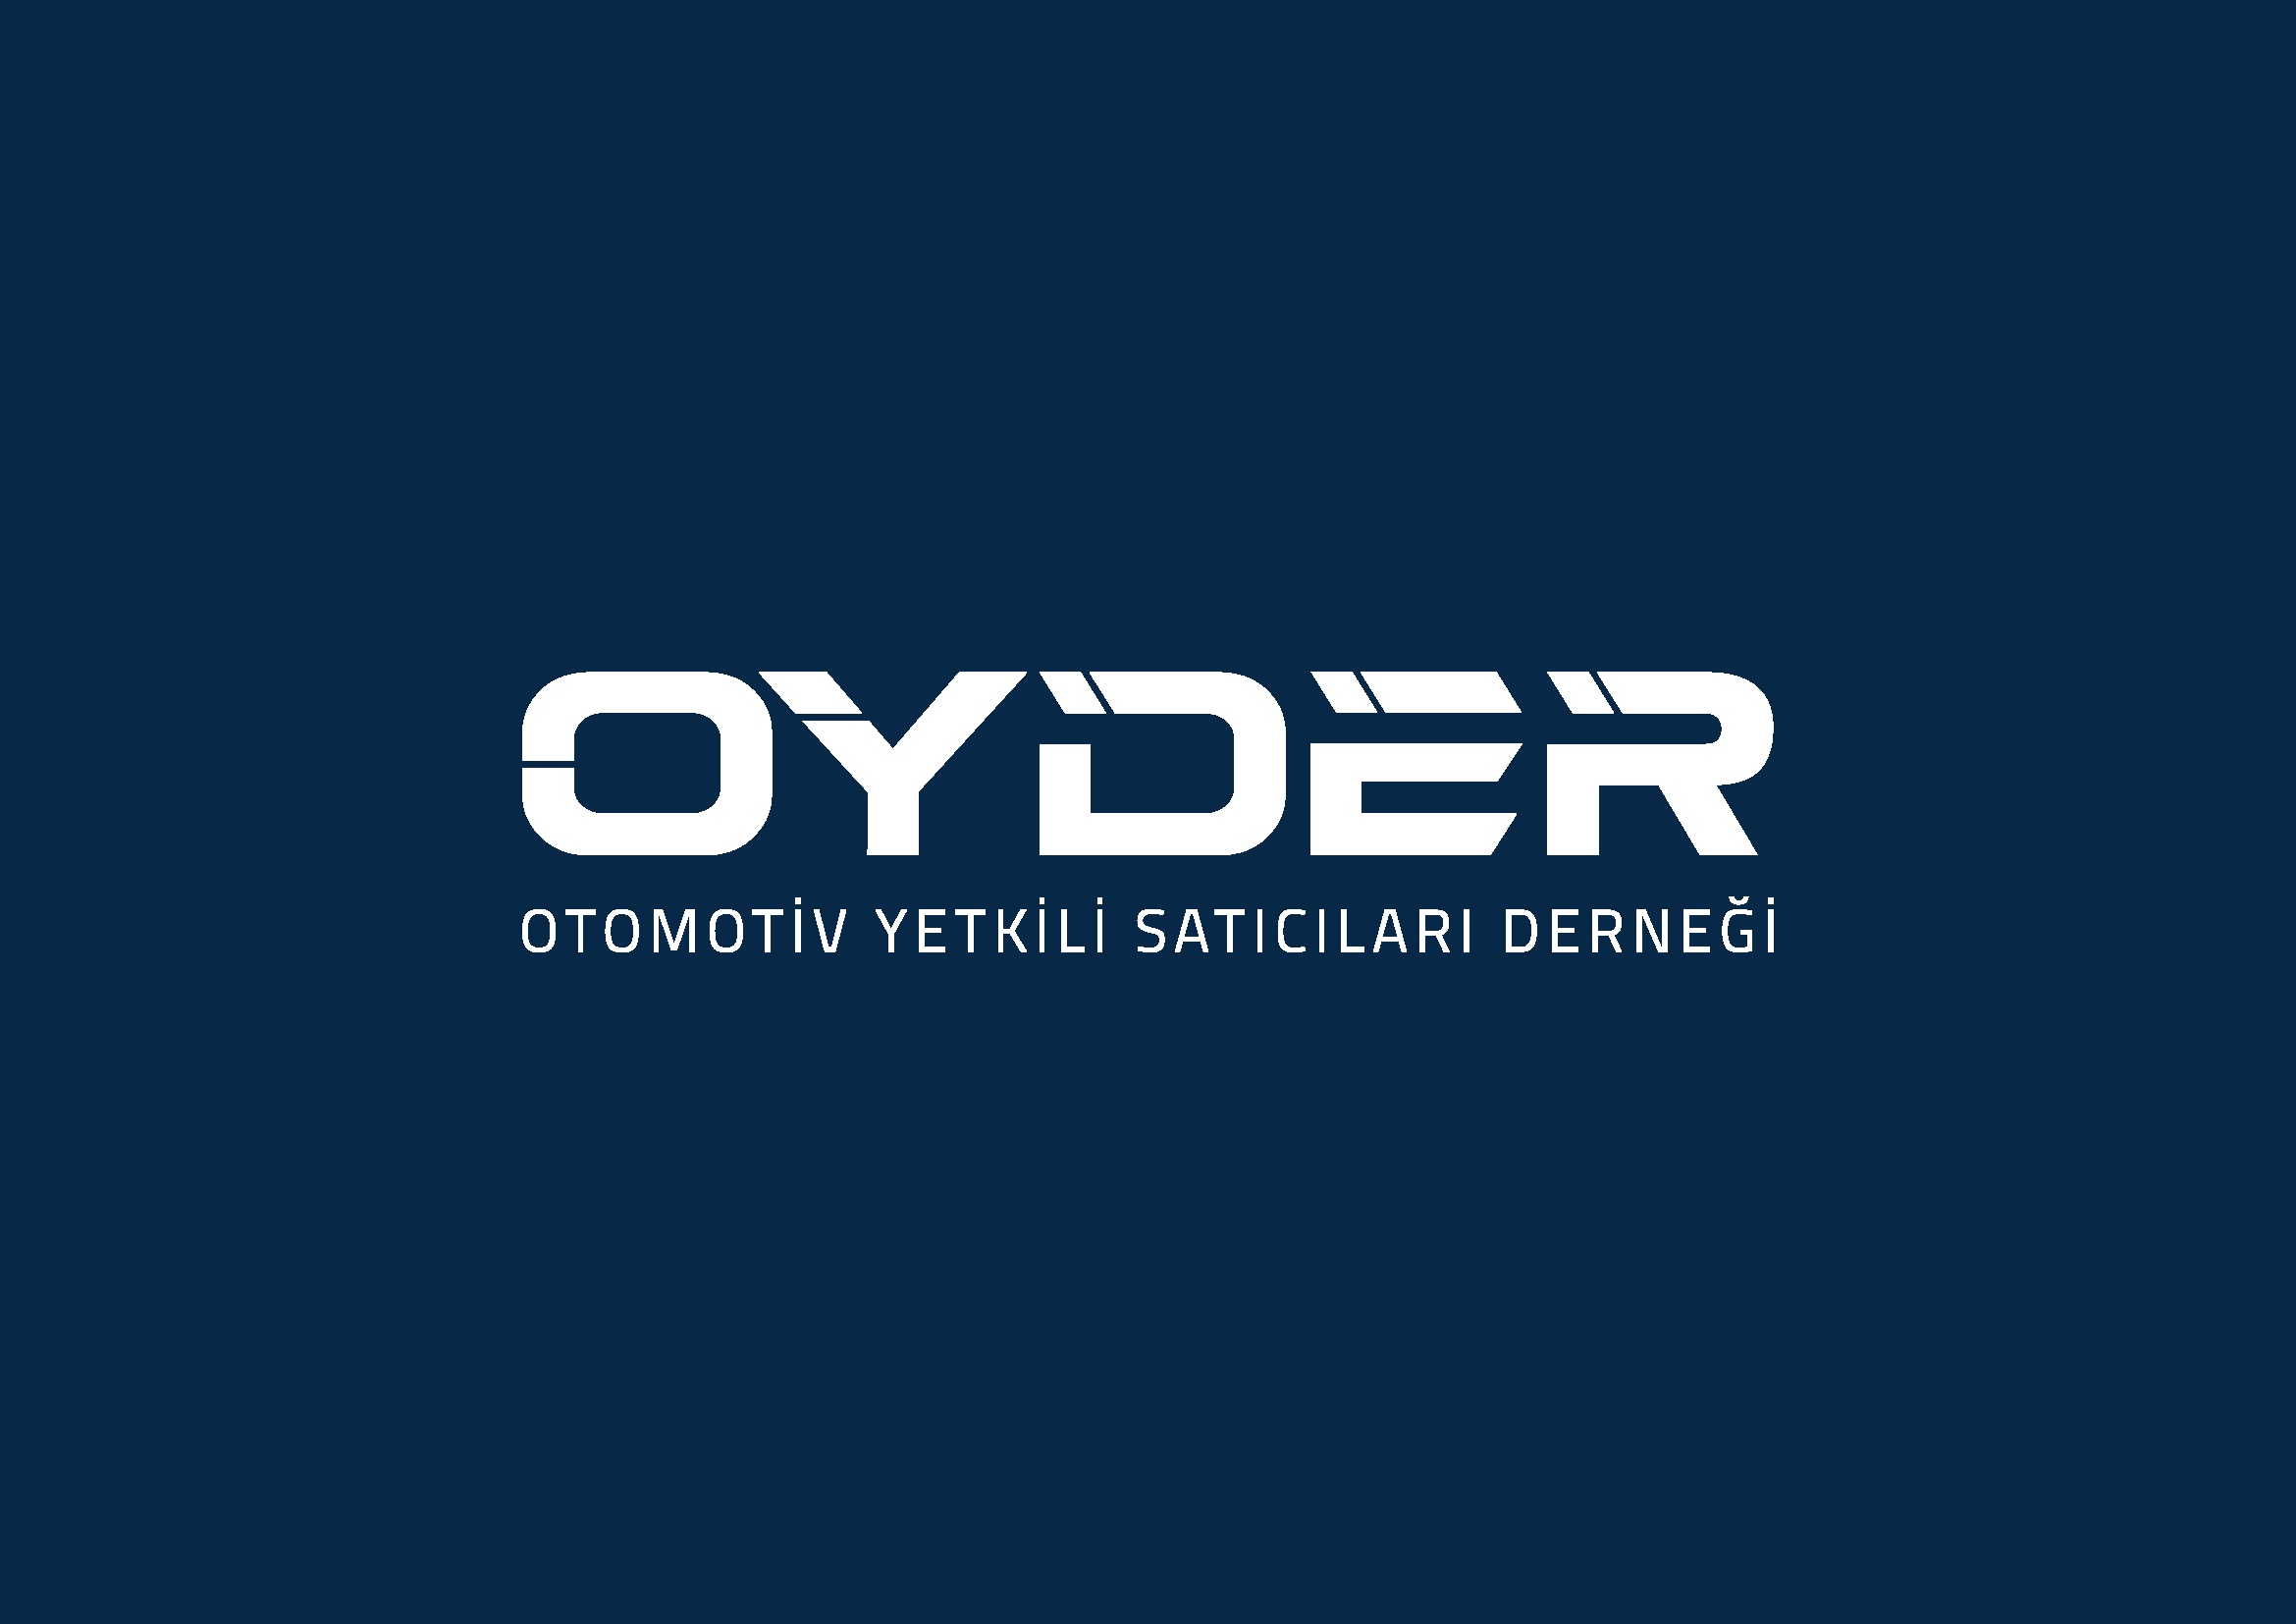 OYDER logosunu güncelledi